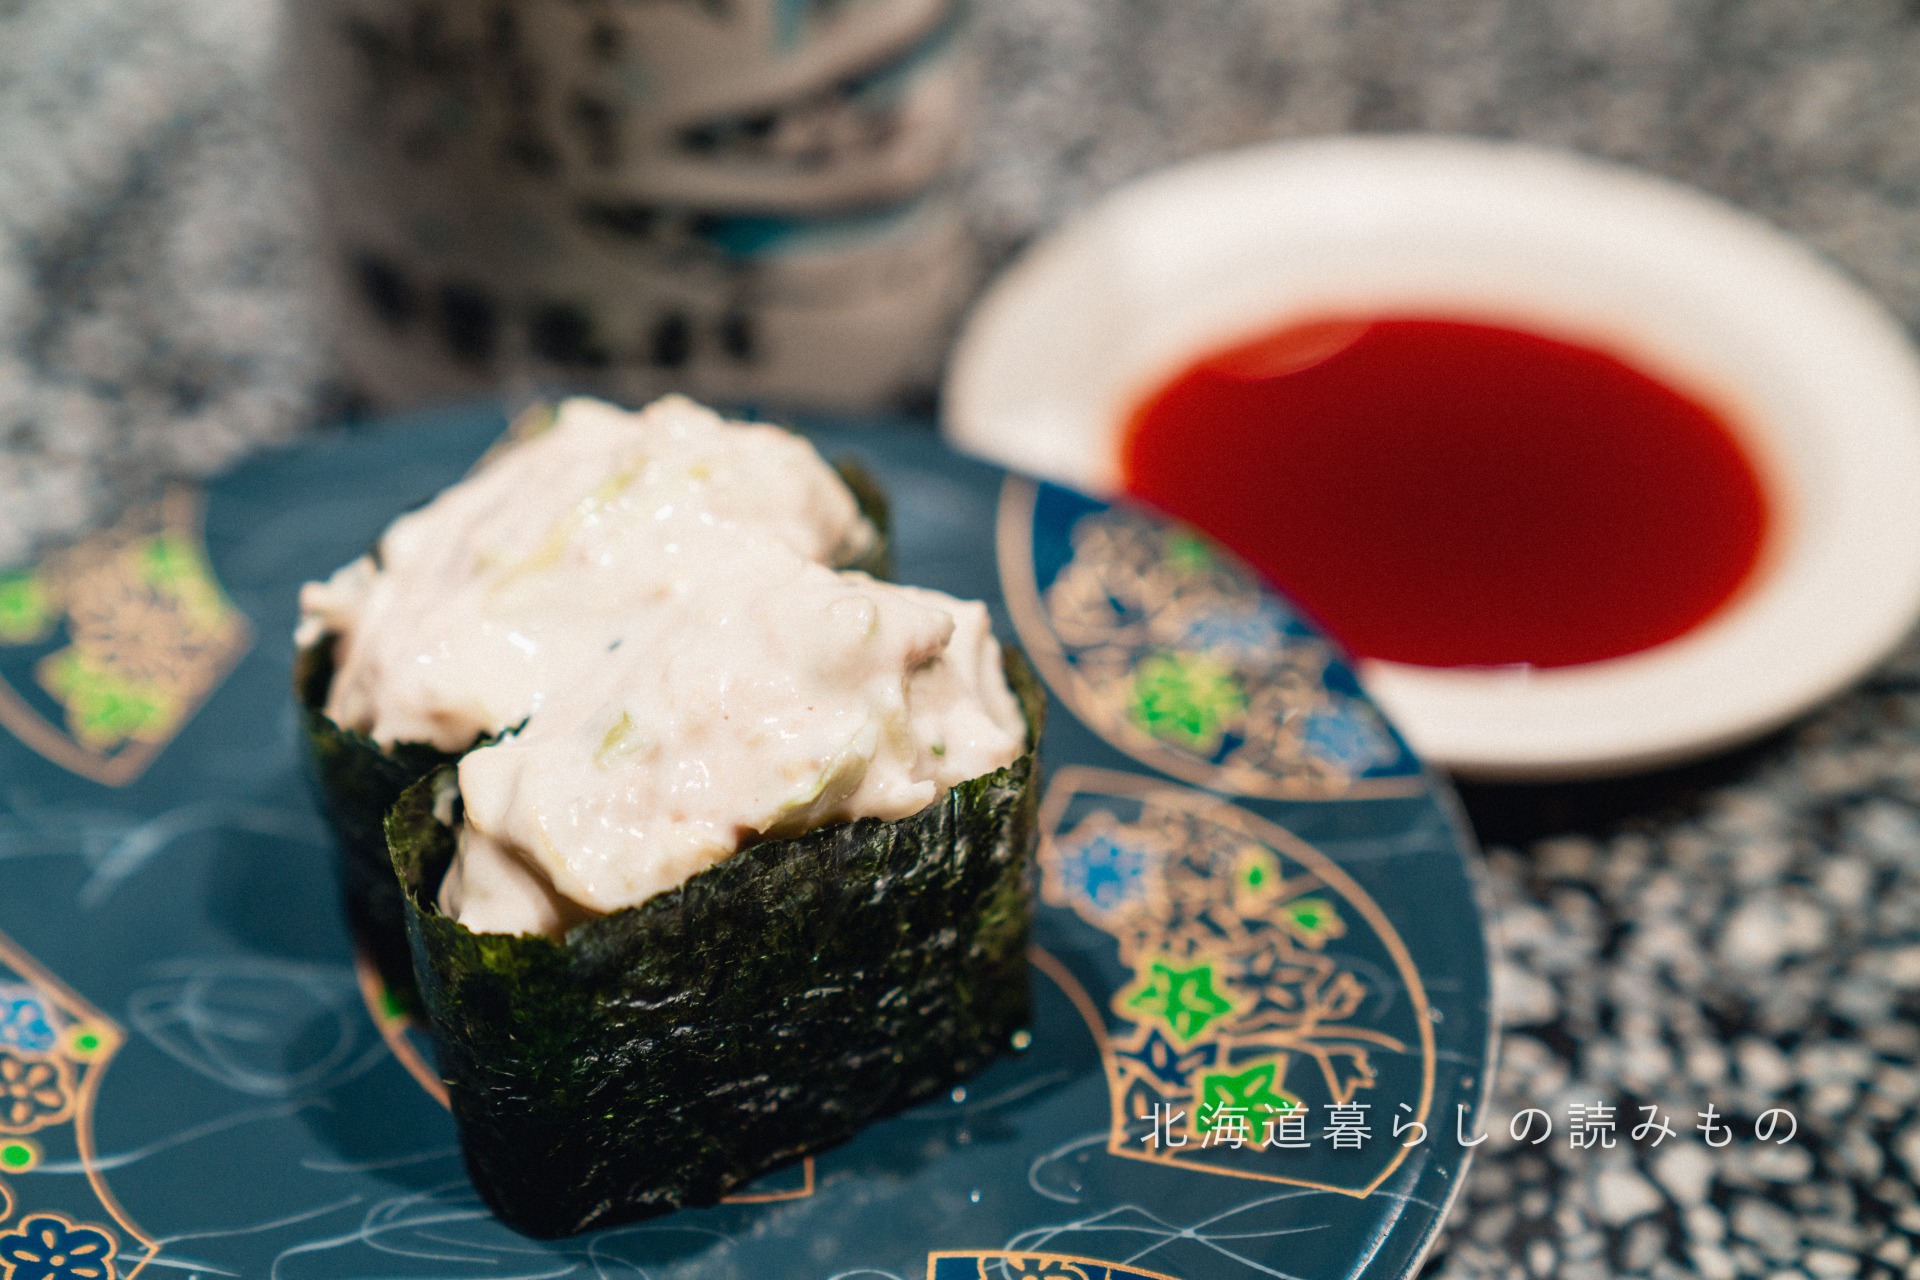 迴轉壽司根室花丸的菜單上的「金槍魚沙拉」